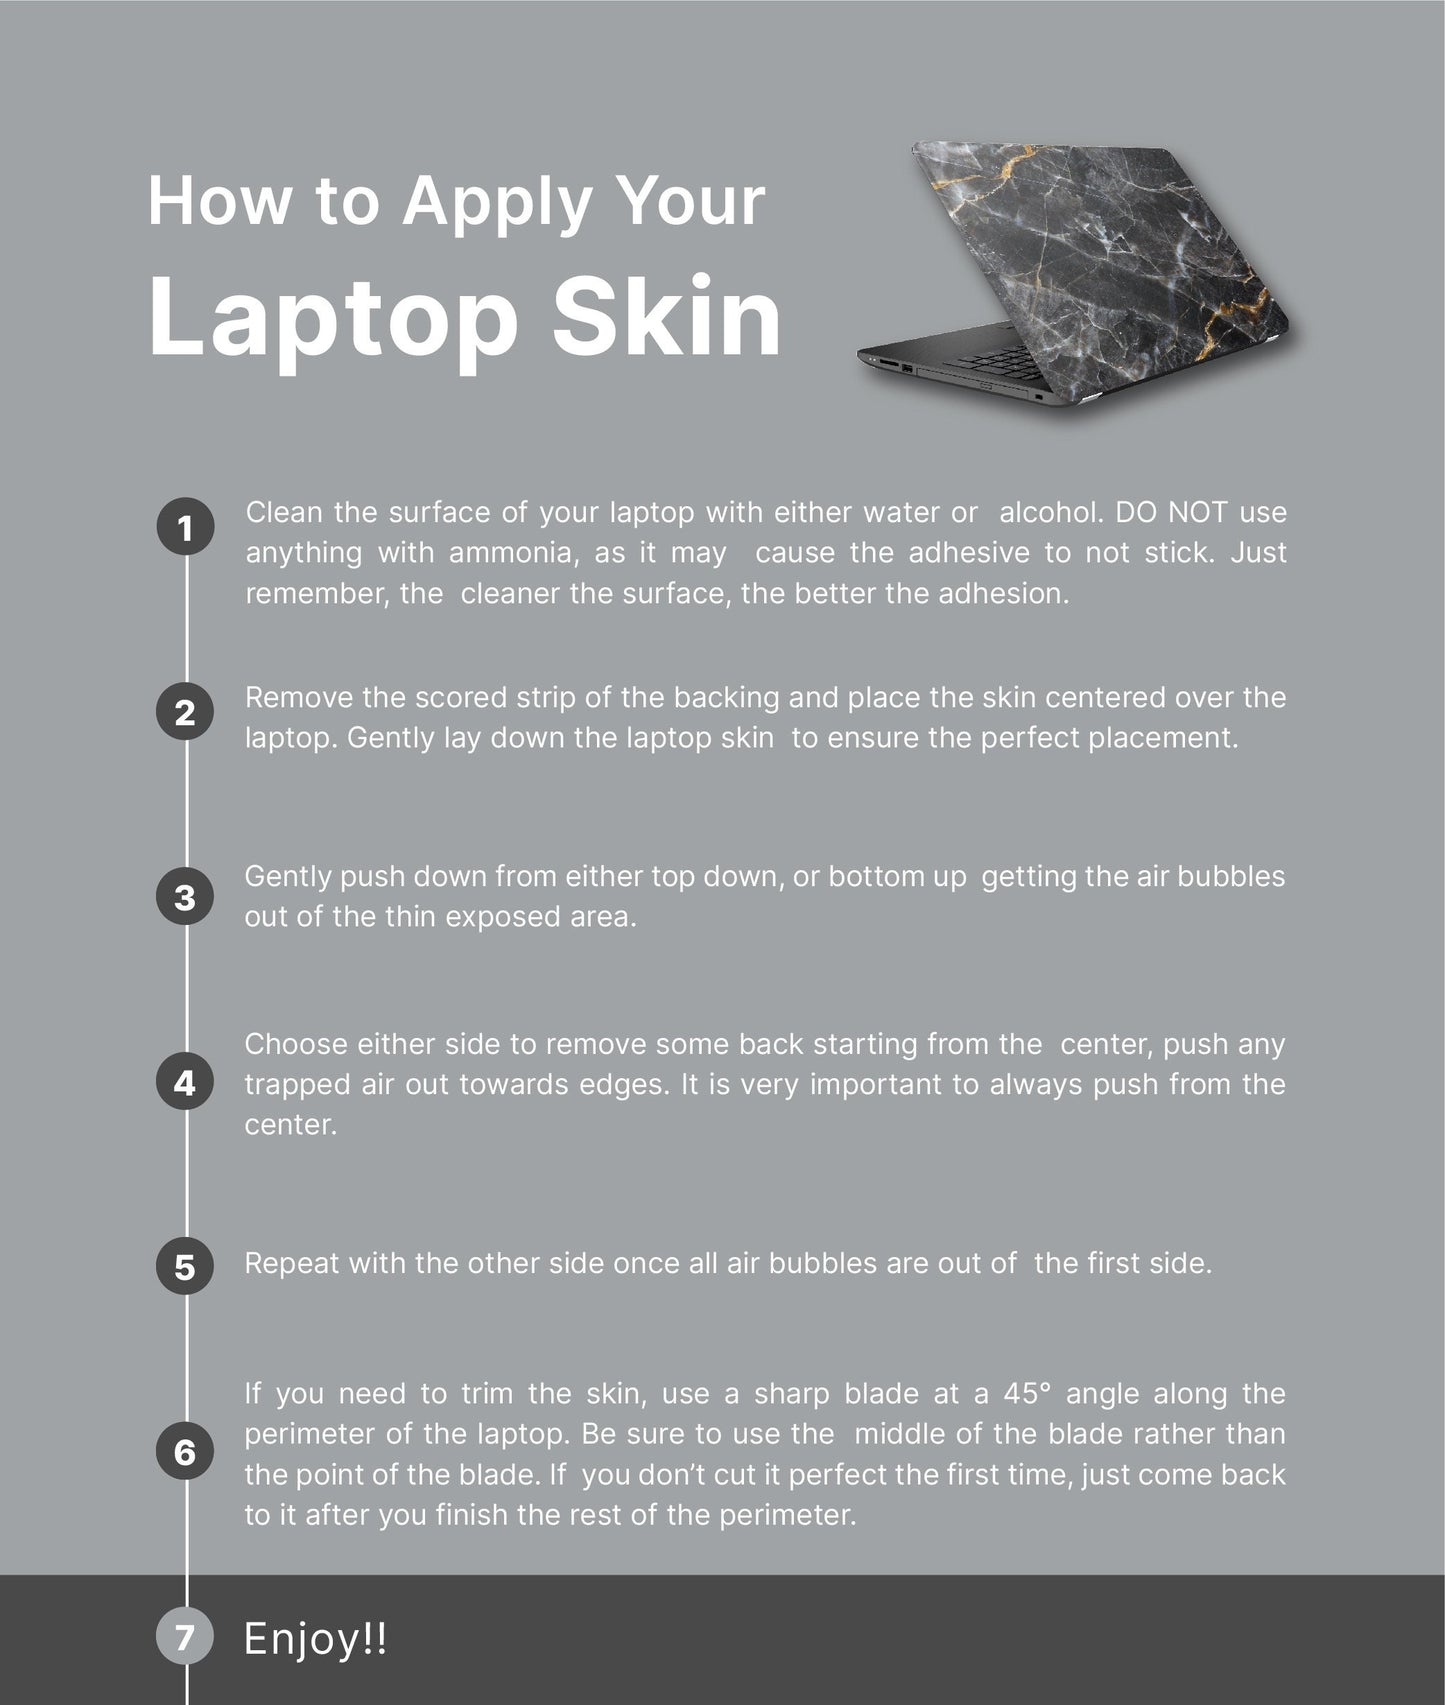 Sunset Laptop Skin, Laptop Cover, Laptop Skins, Removable Laptop Skins, Laptop Decal, Customized Laptop Skin, Laptop Stickers 325